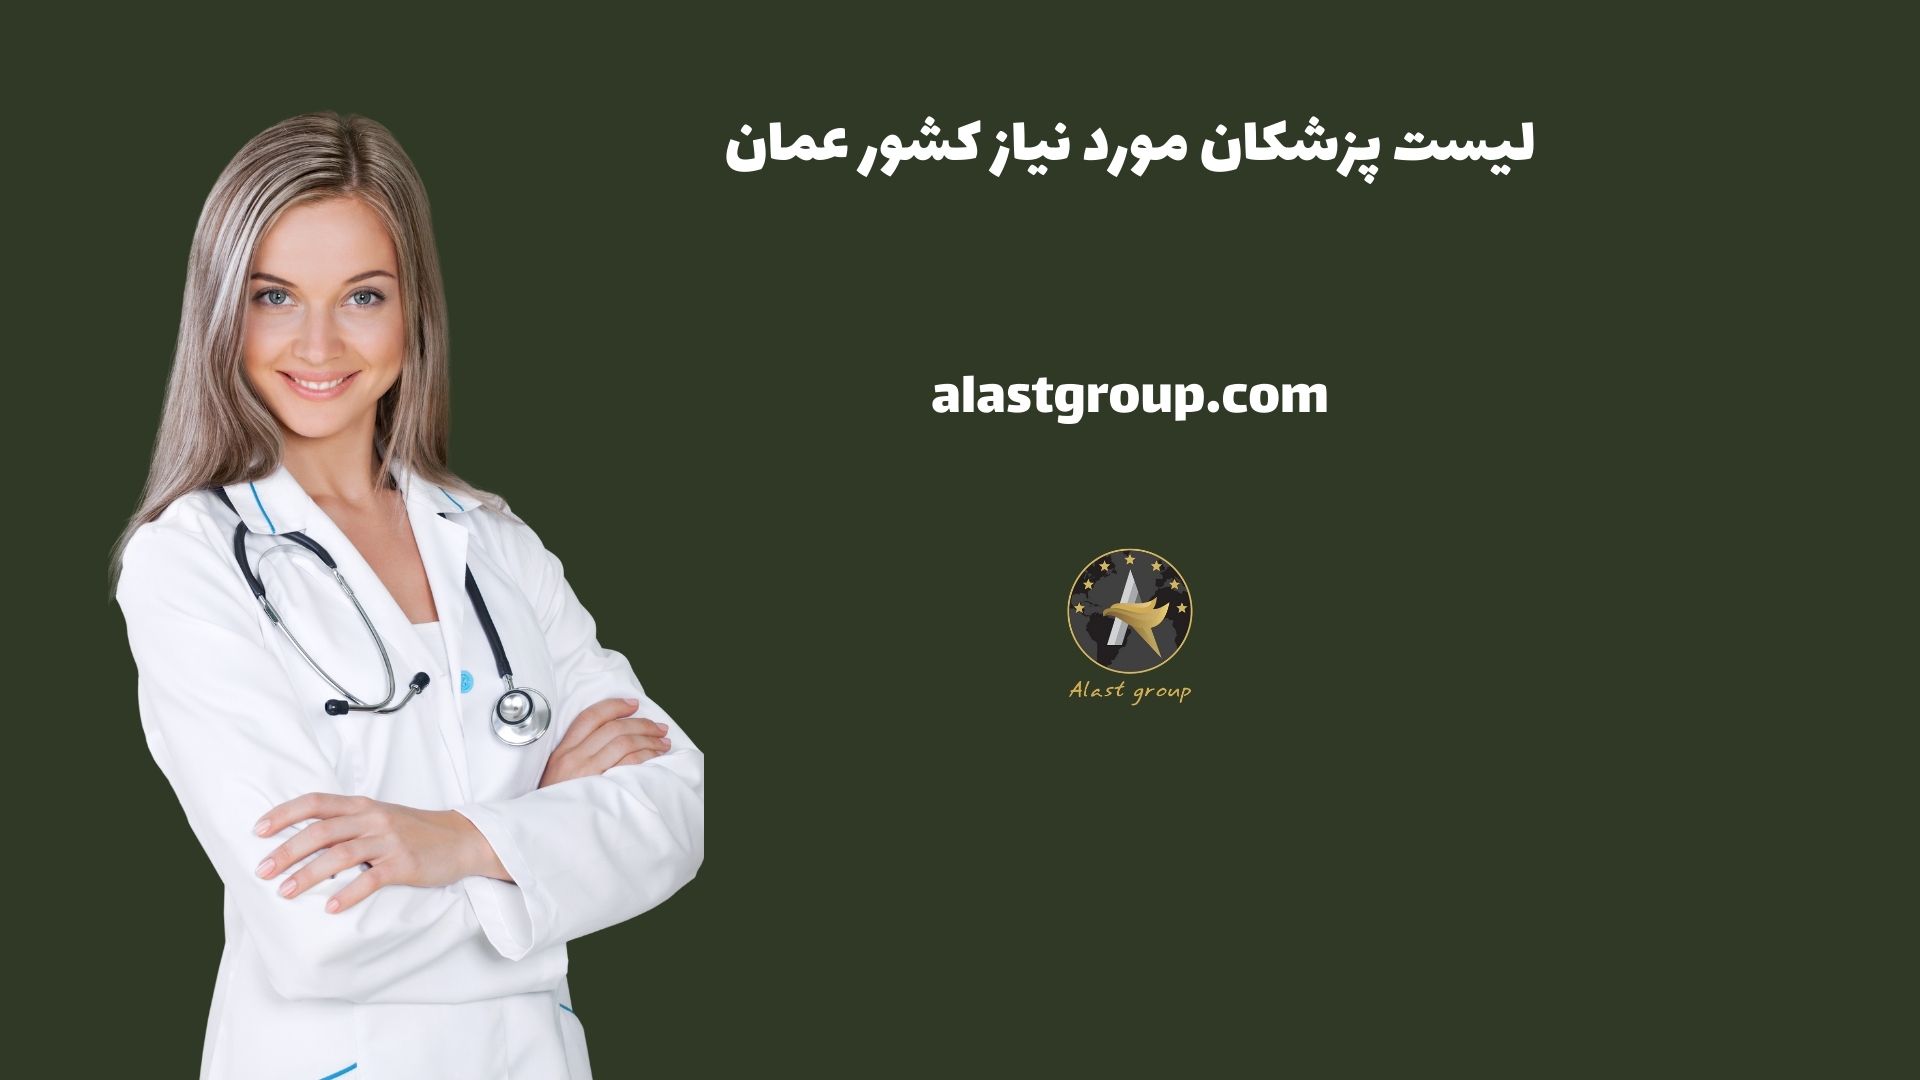 لیست پزشکان مورد نیاز کشور عمان